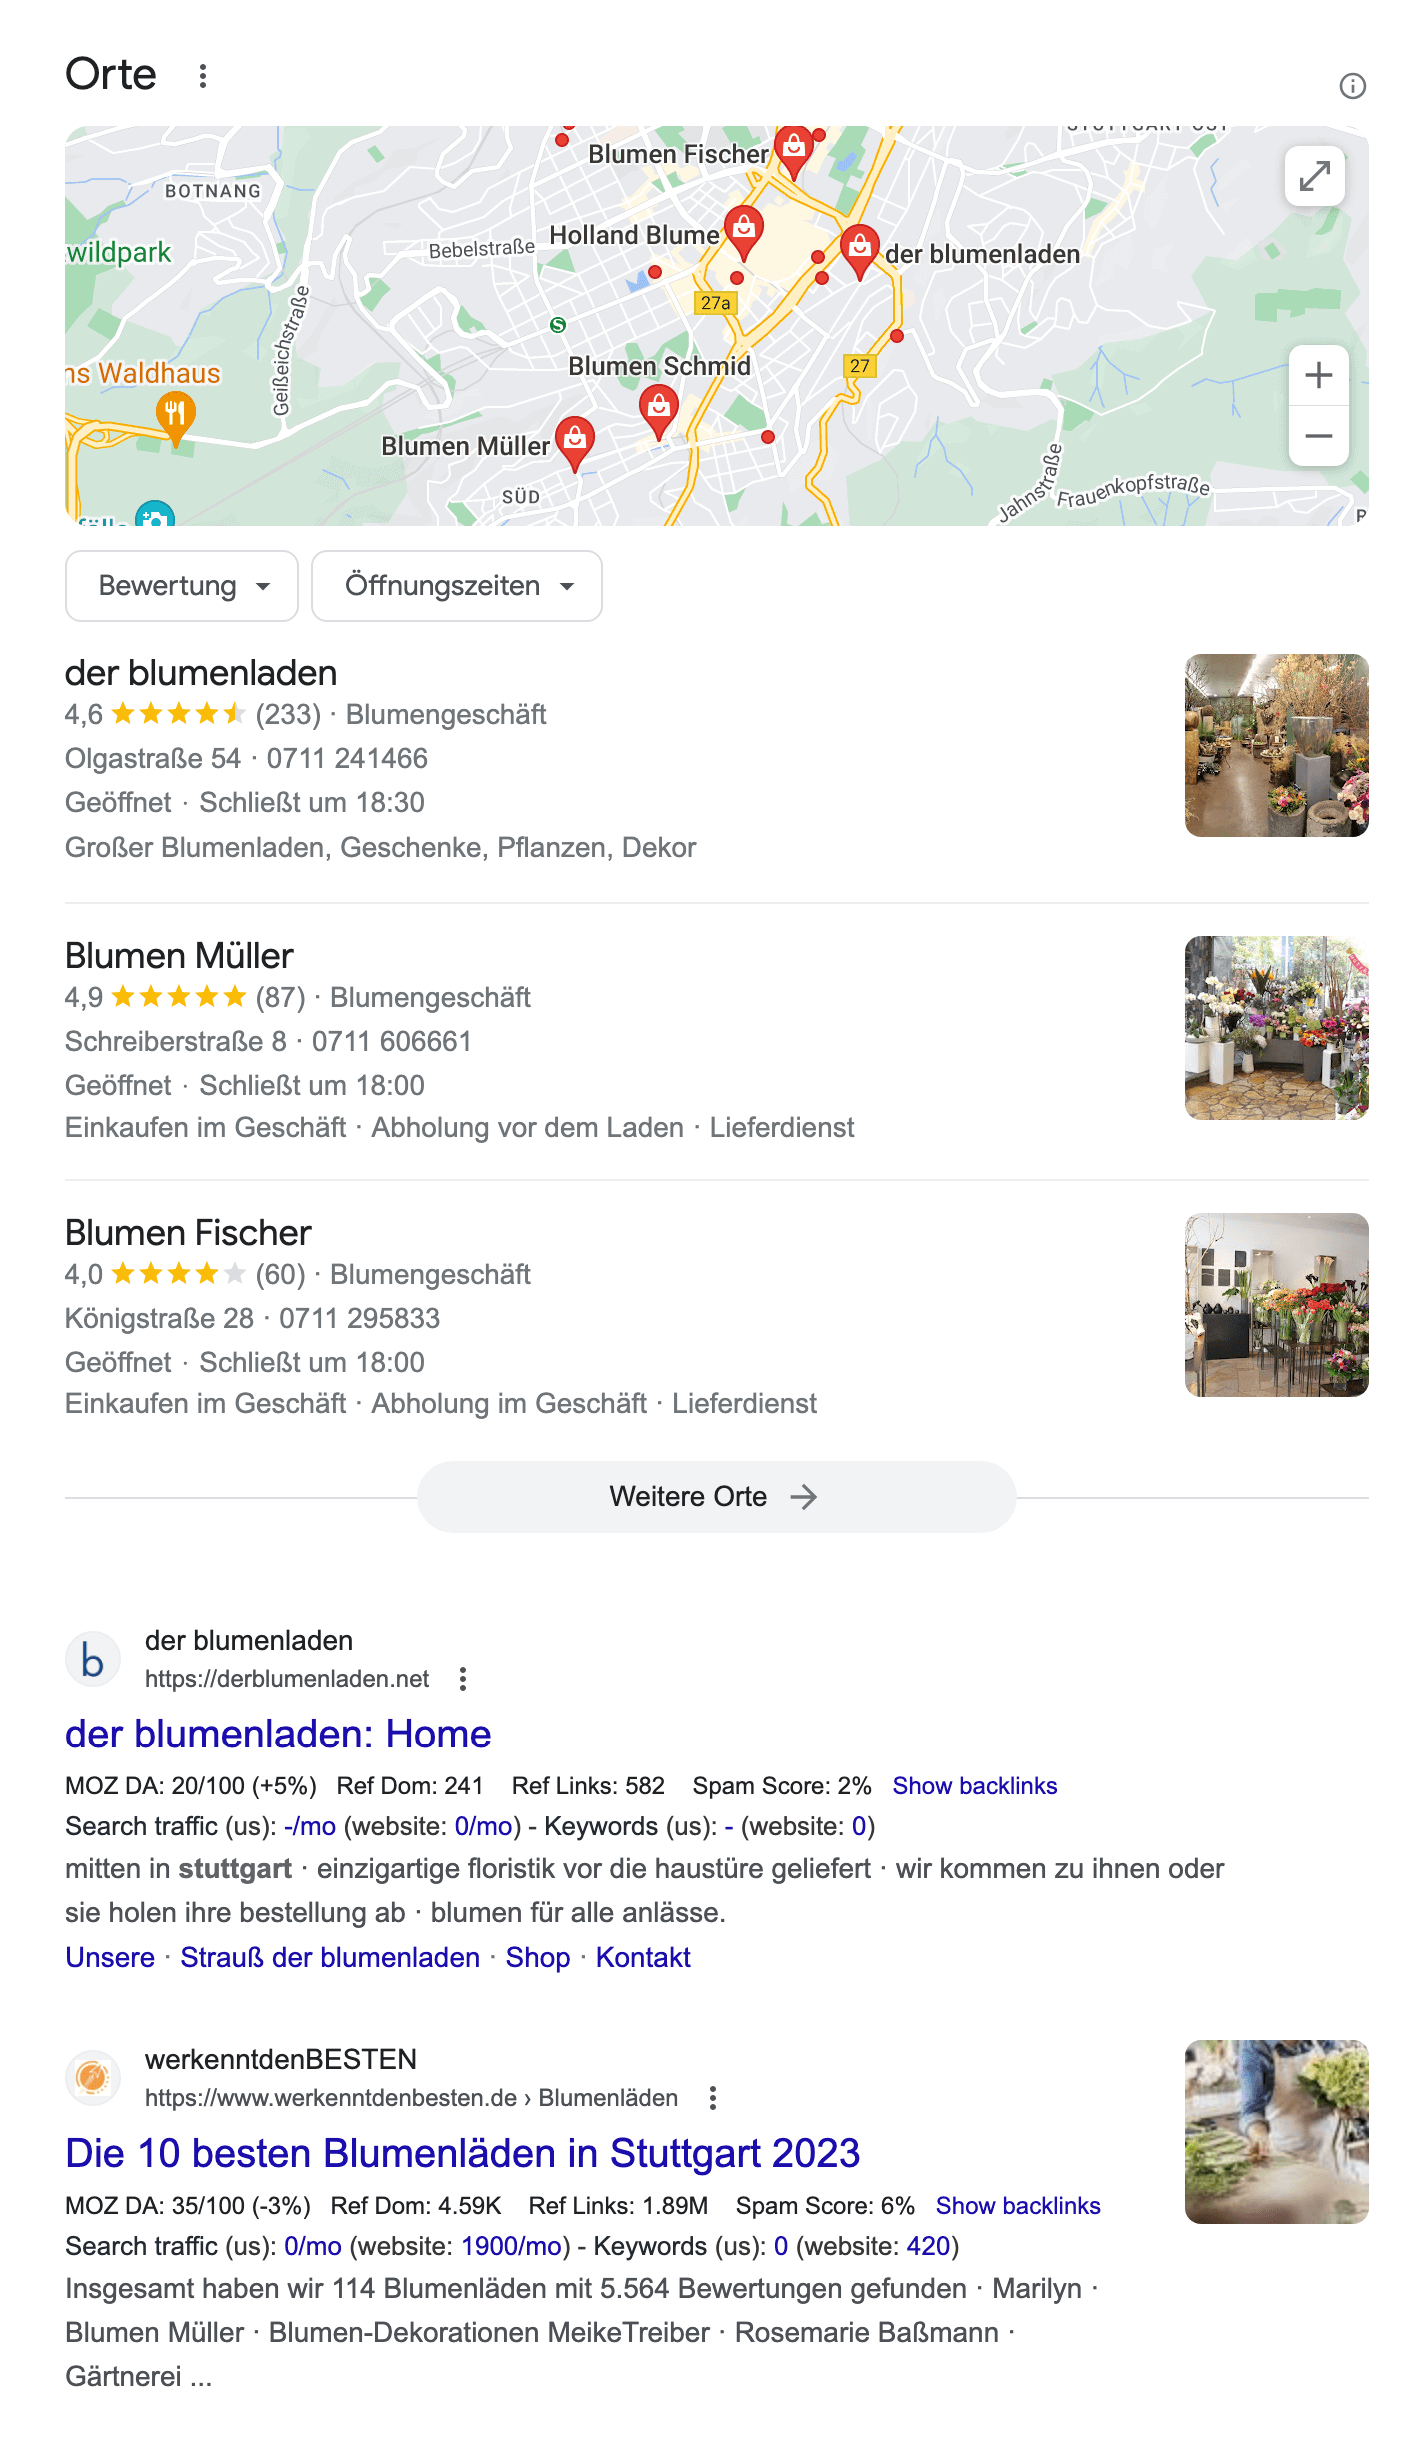 Google Suchergebnis Blumenladen Stuttgart mit Google Maps Einblendung.